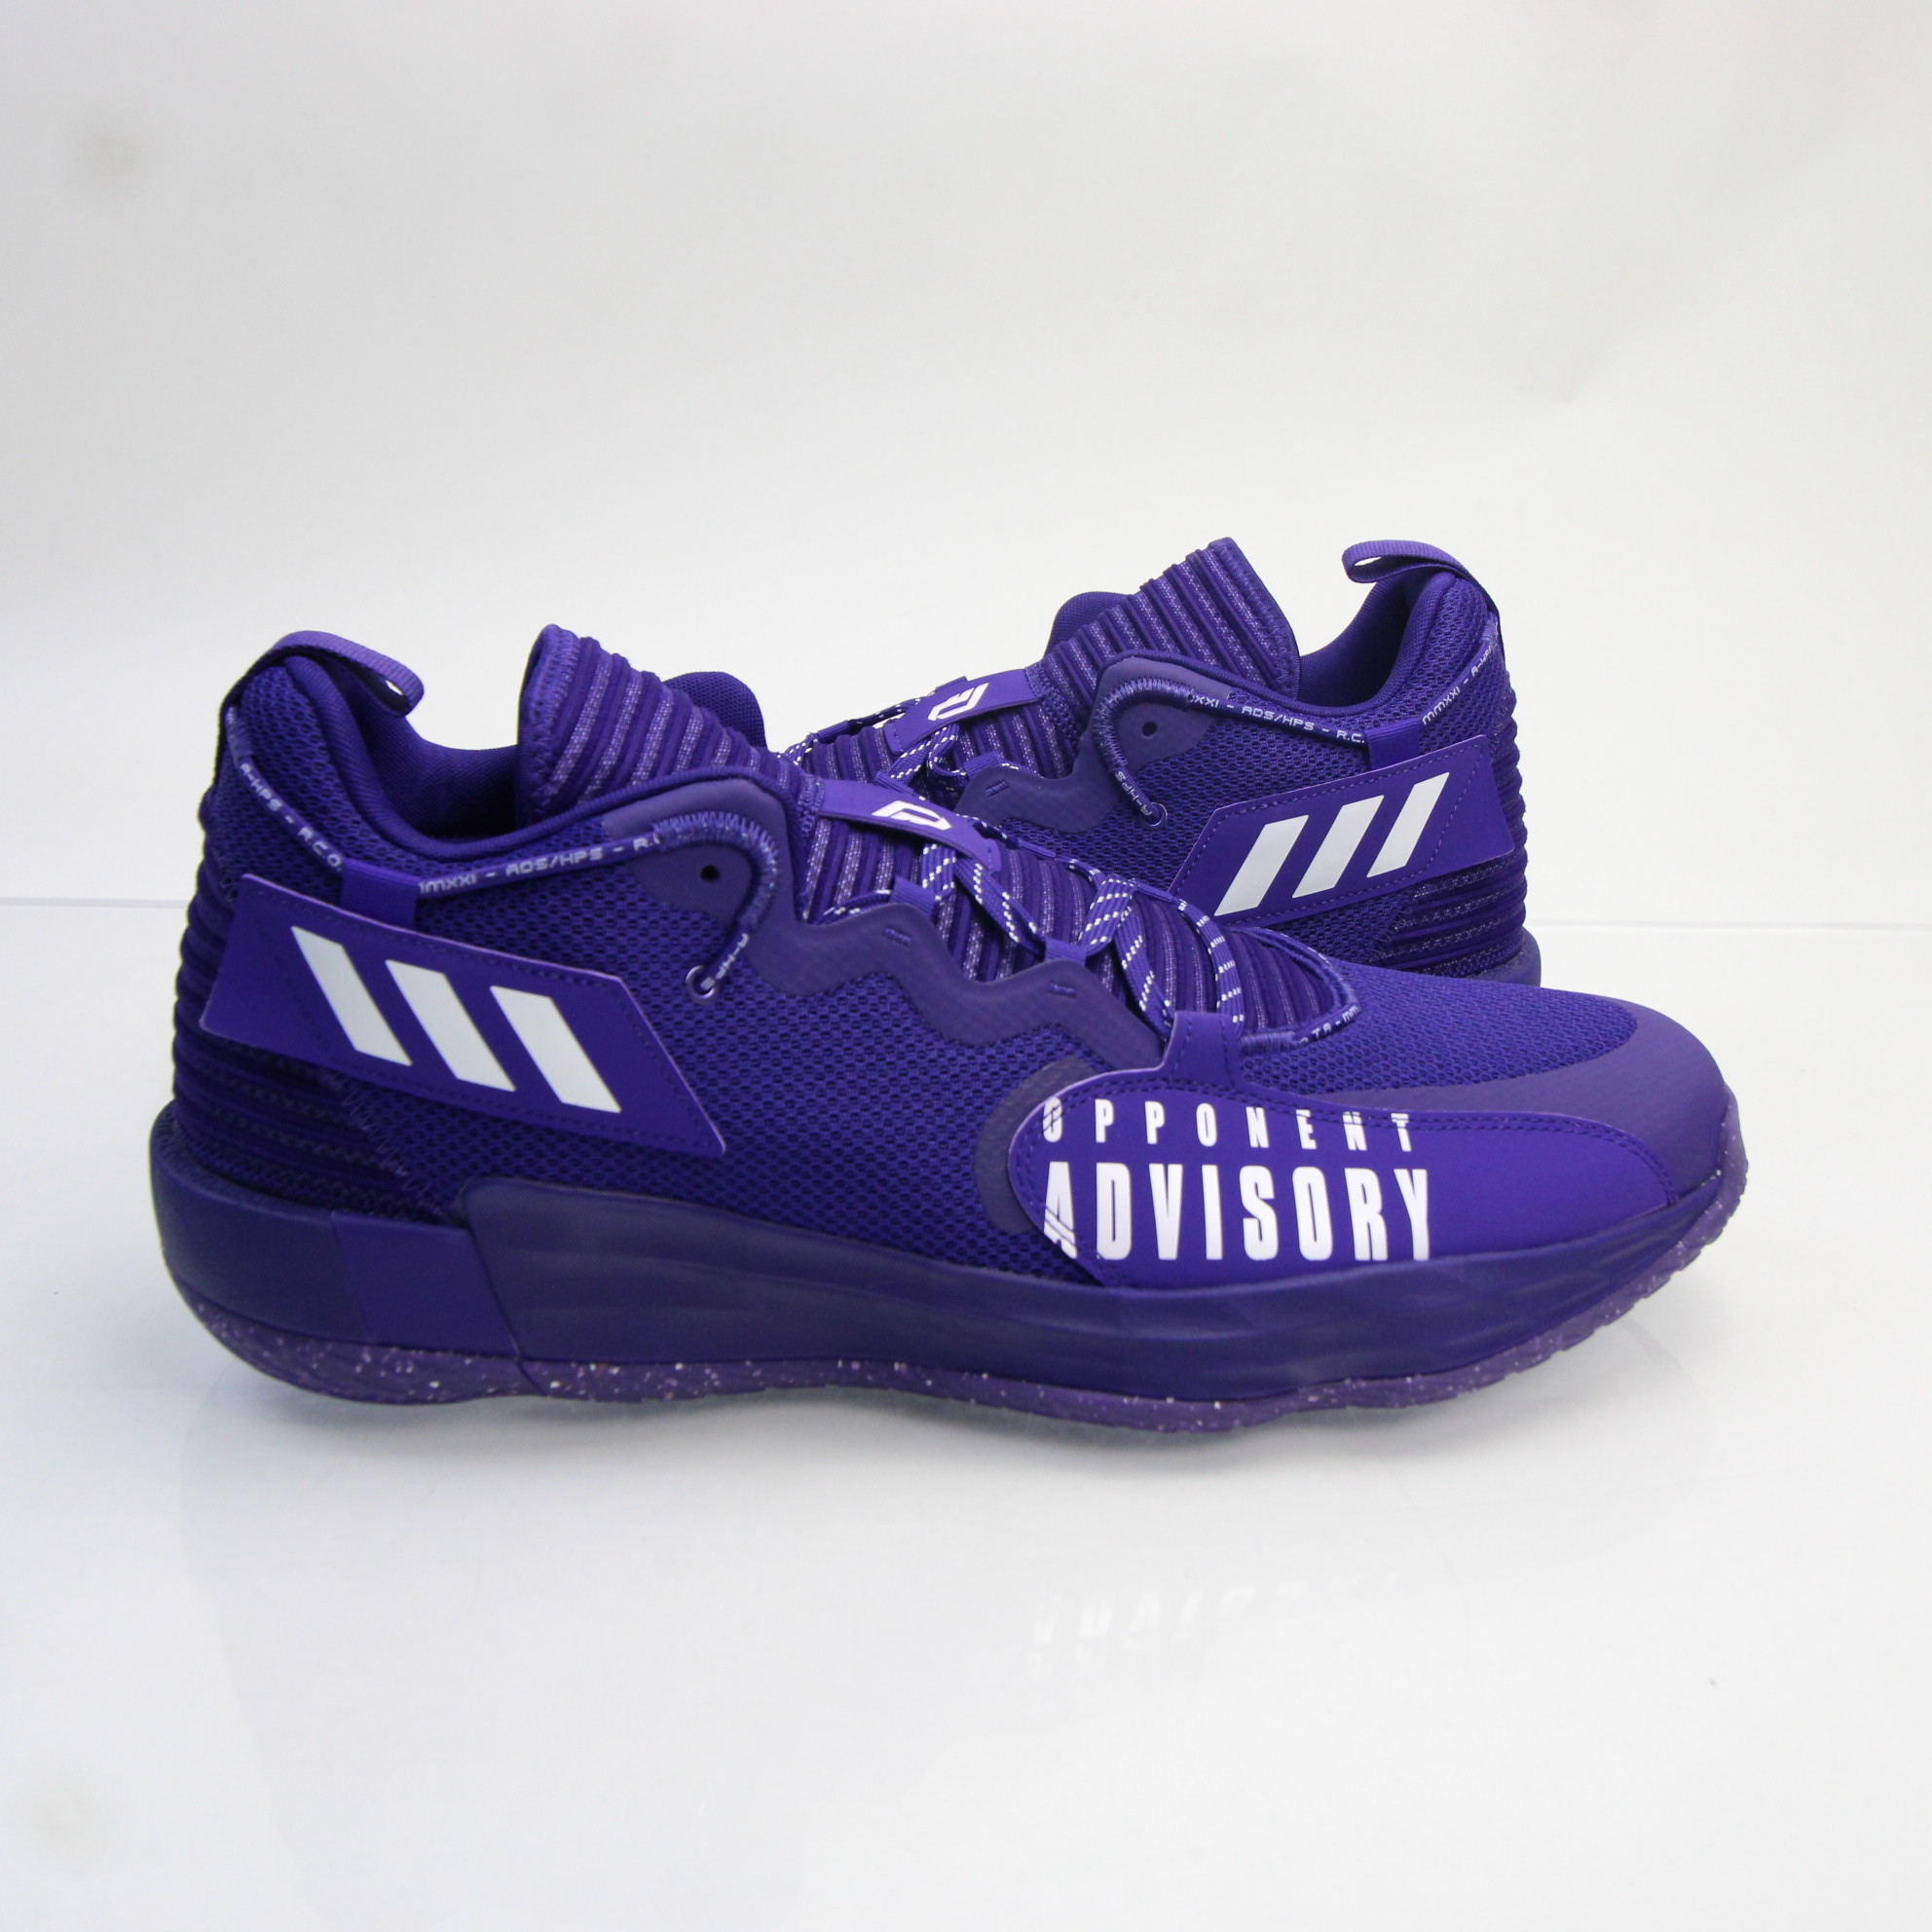 uitdrukken jukbeen bunker adidas Basketball Shoe Men&#039;s Purple New without Box | eBay